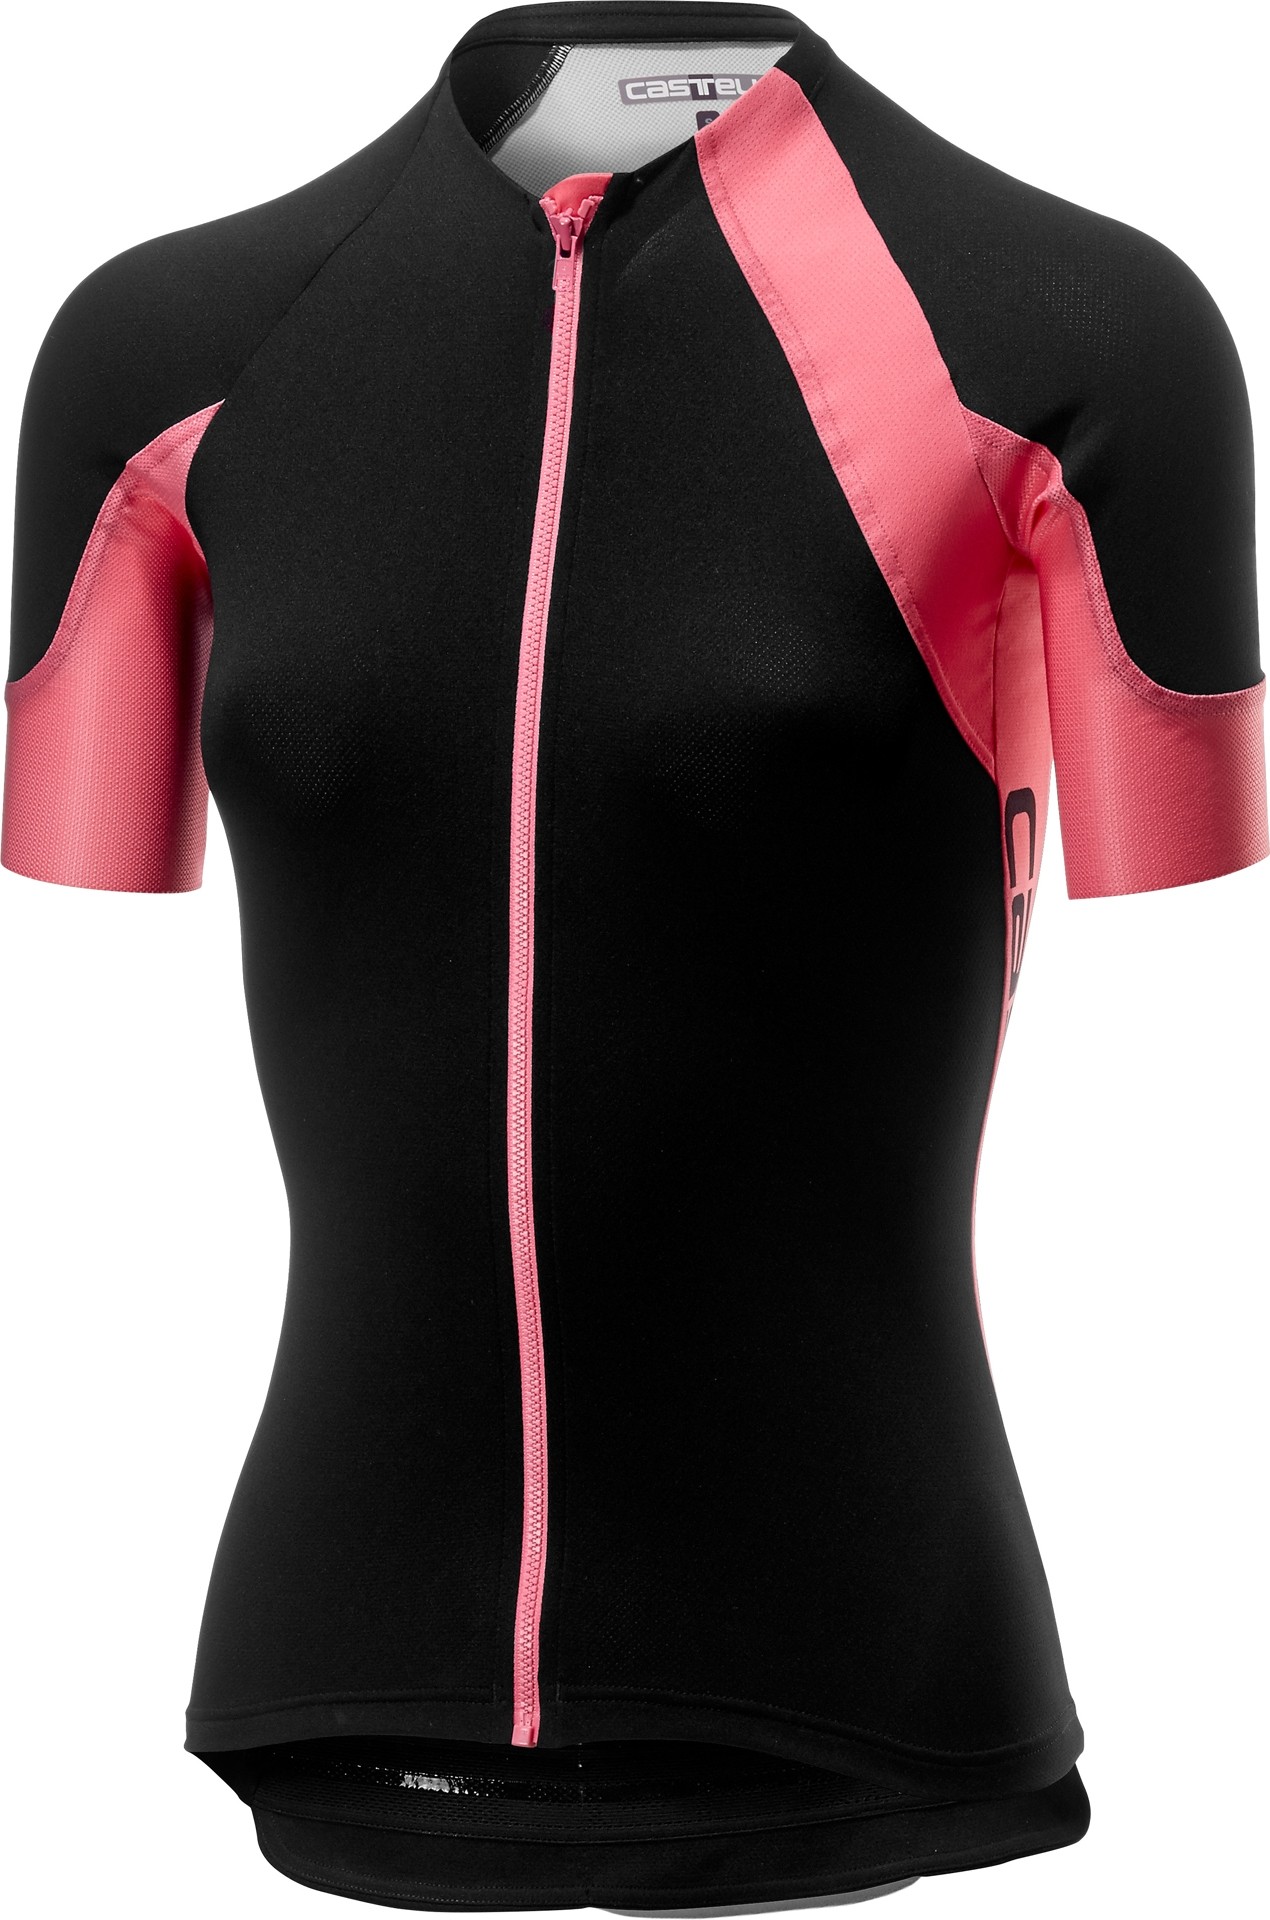 Castelli scheggia 2 maillot de cyclisme manches courtes femme noir rose